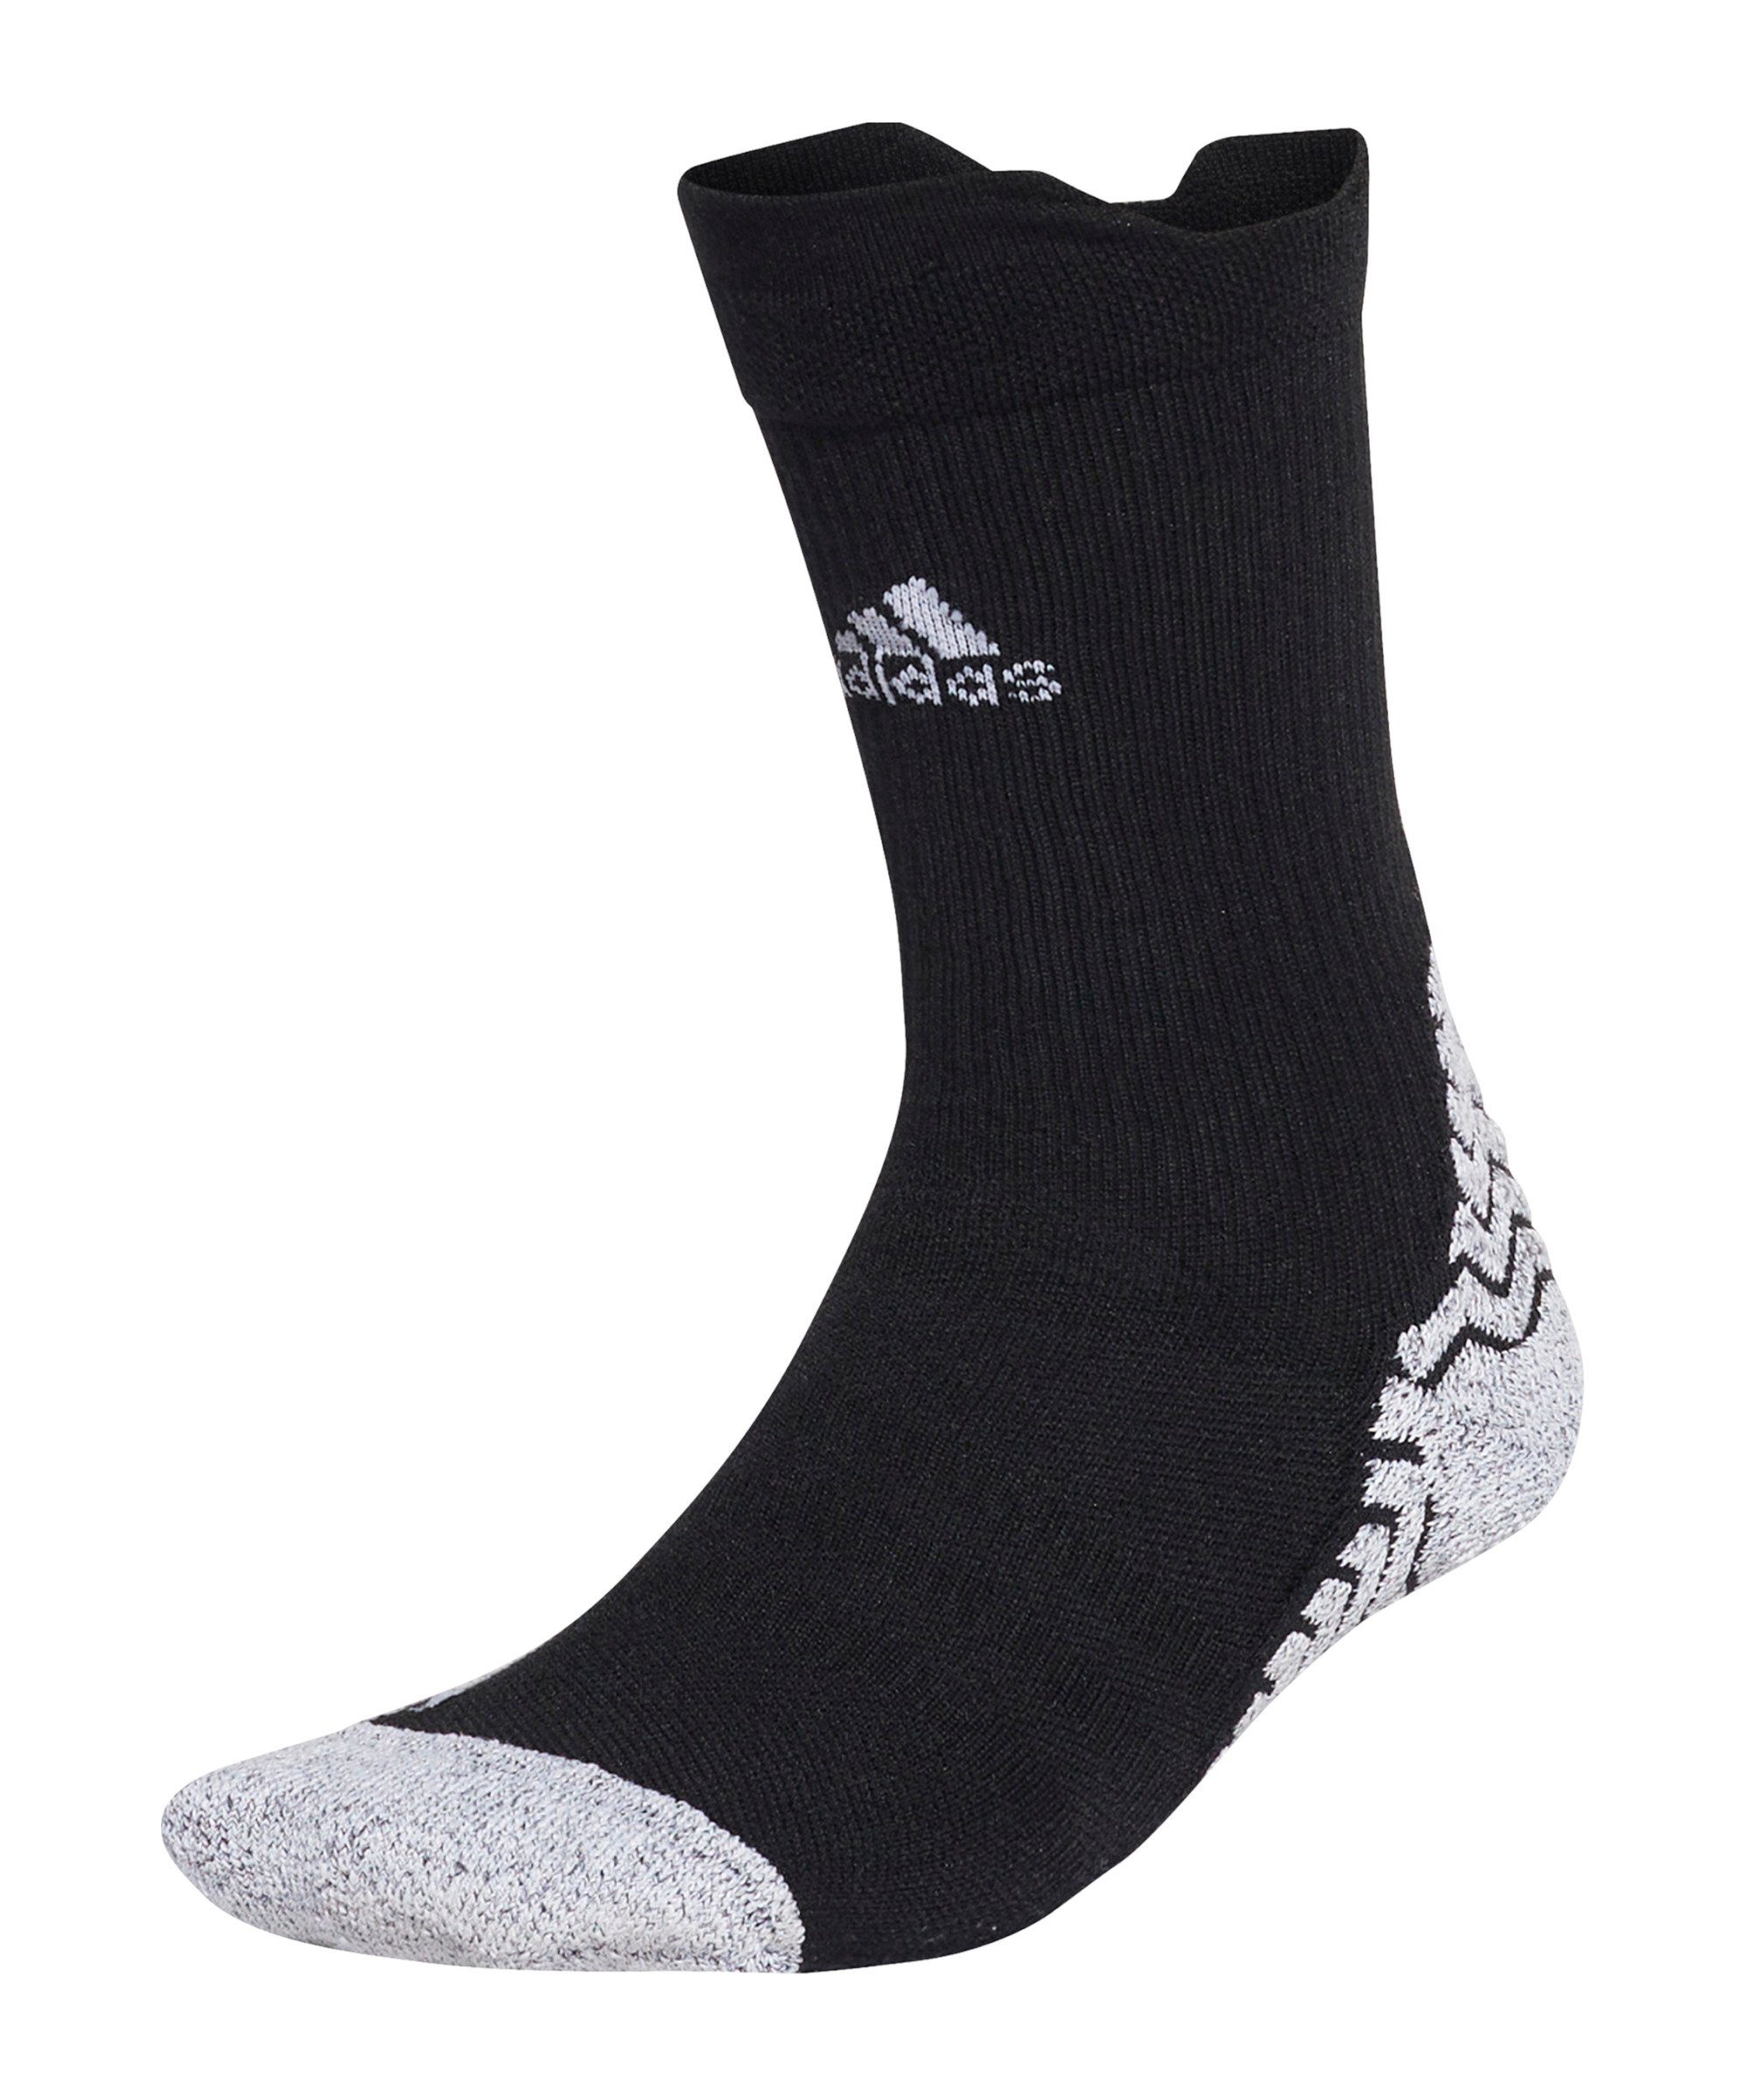 Sportsocken Performance Cover-Up default Socken adidas